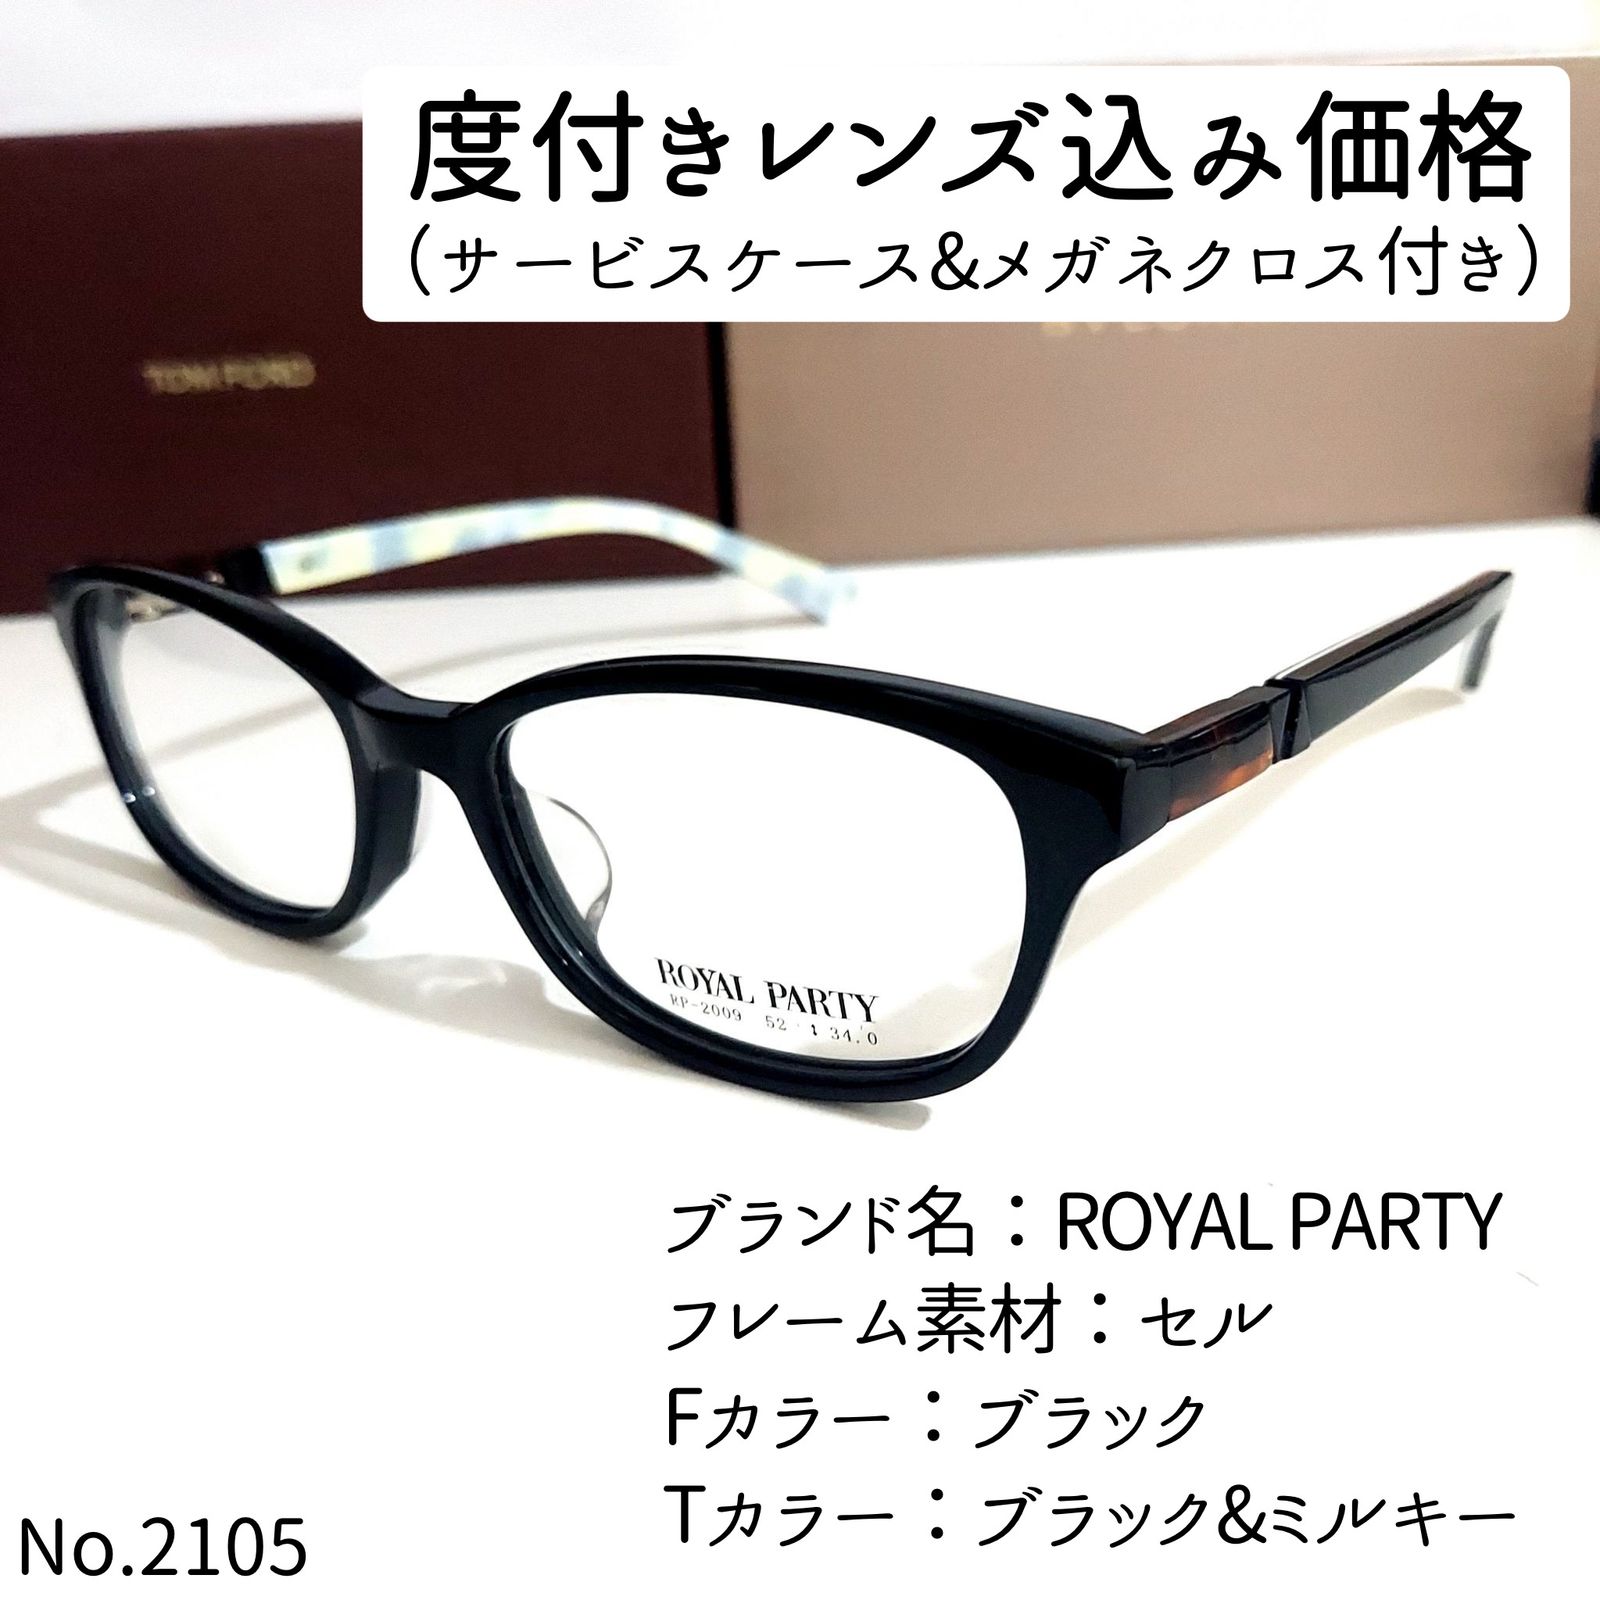 No.2105-メガネ ROYAL PARTY【フレームのみ価格】 - サングラス/メガネ